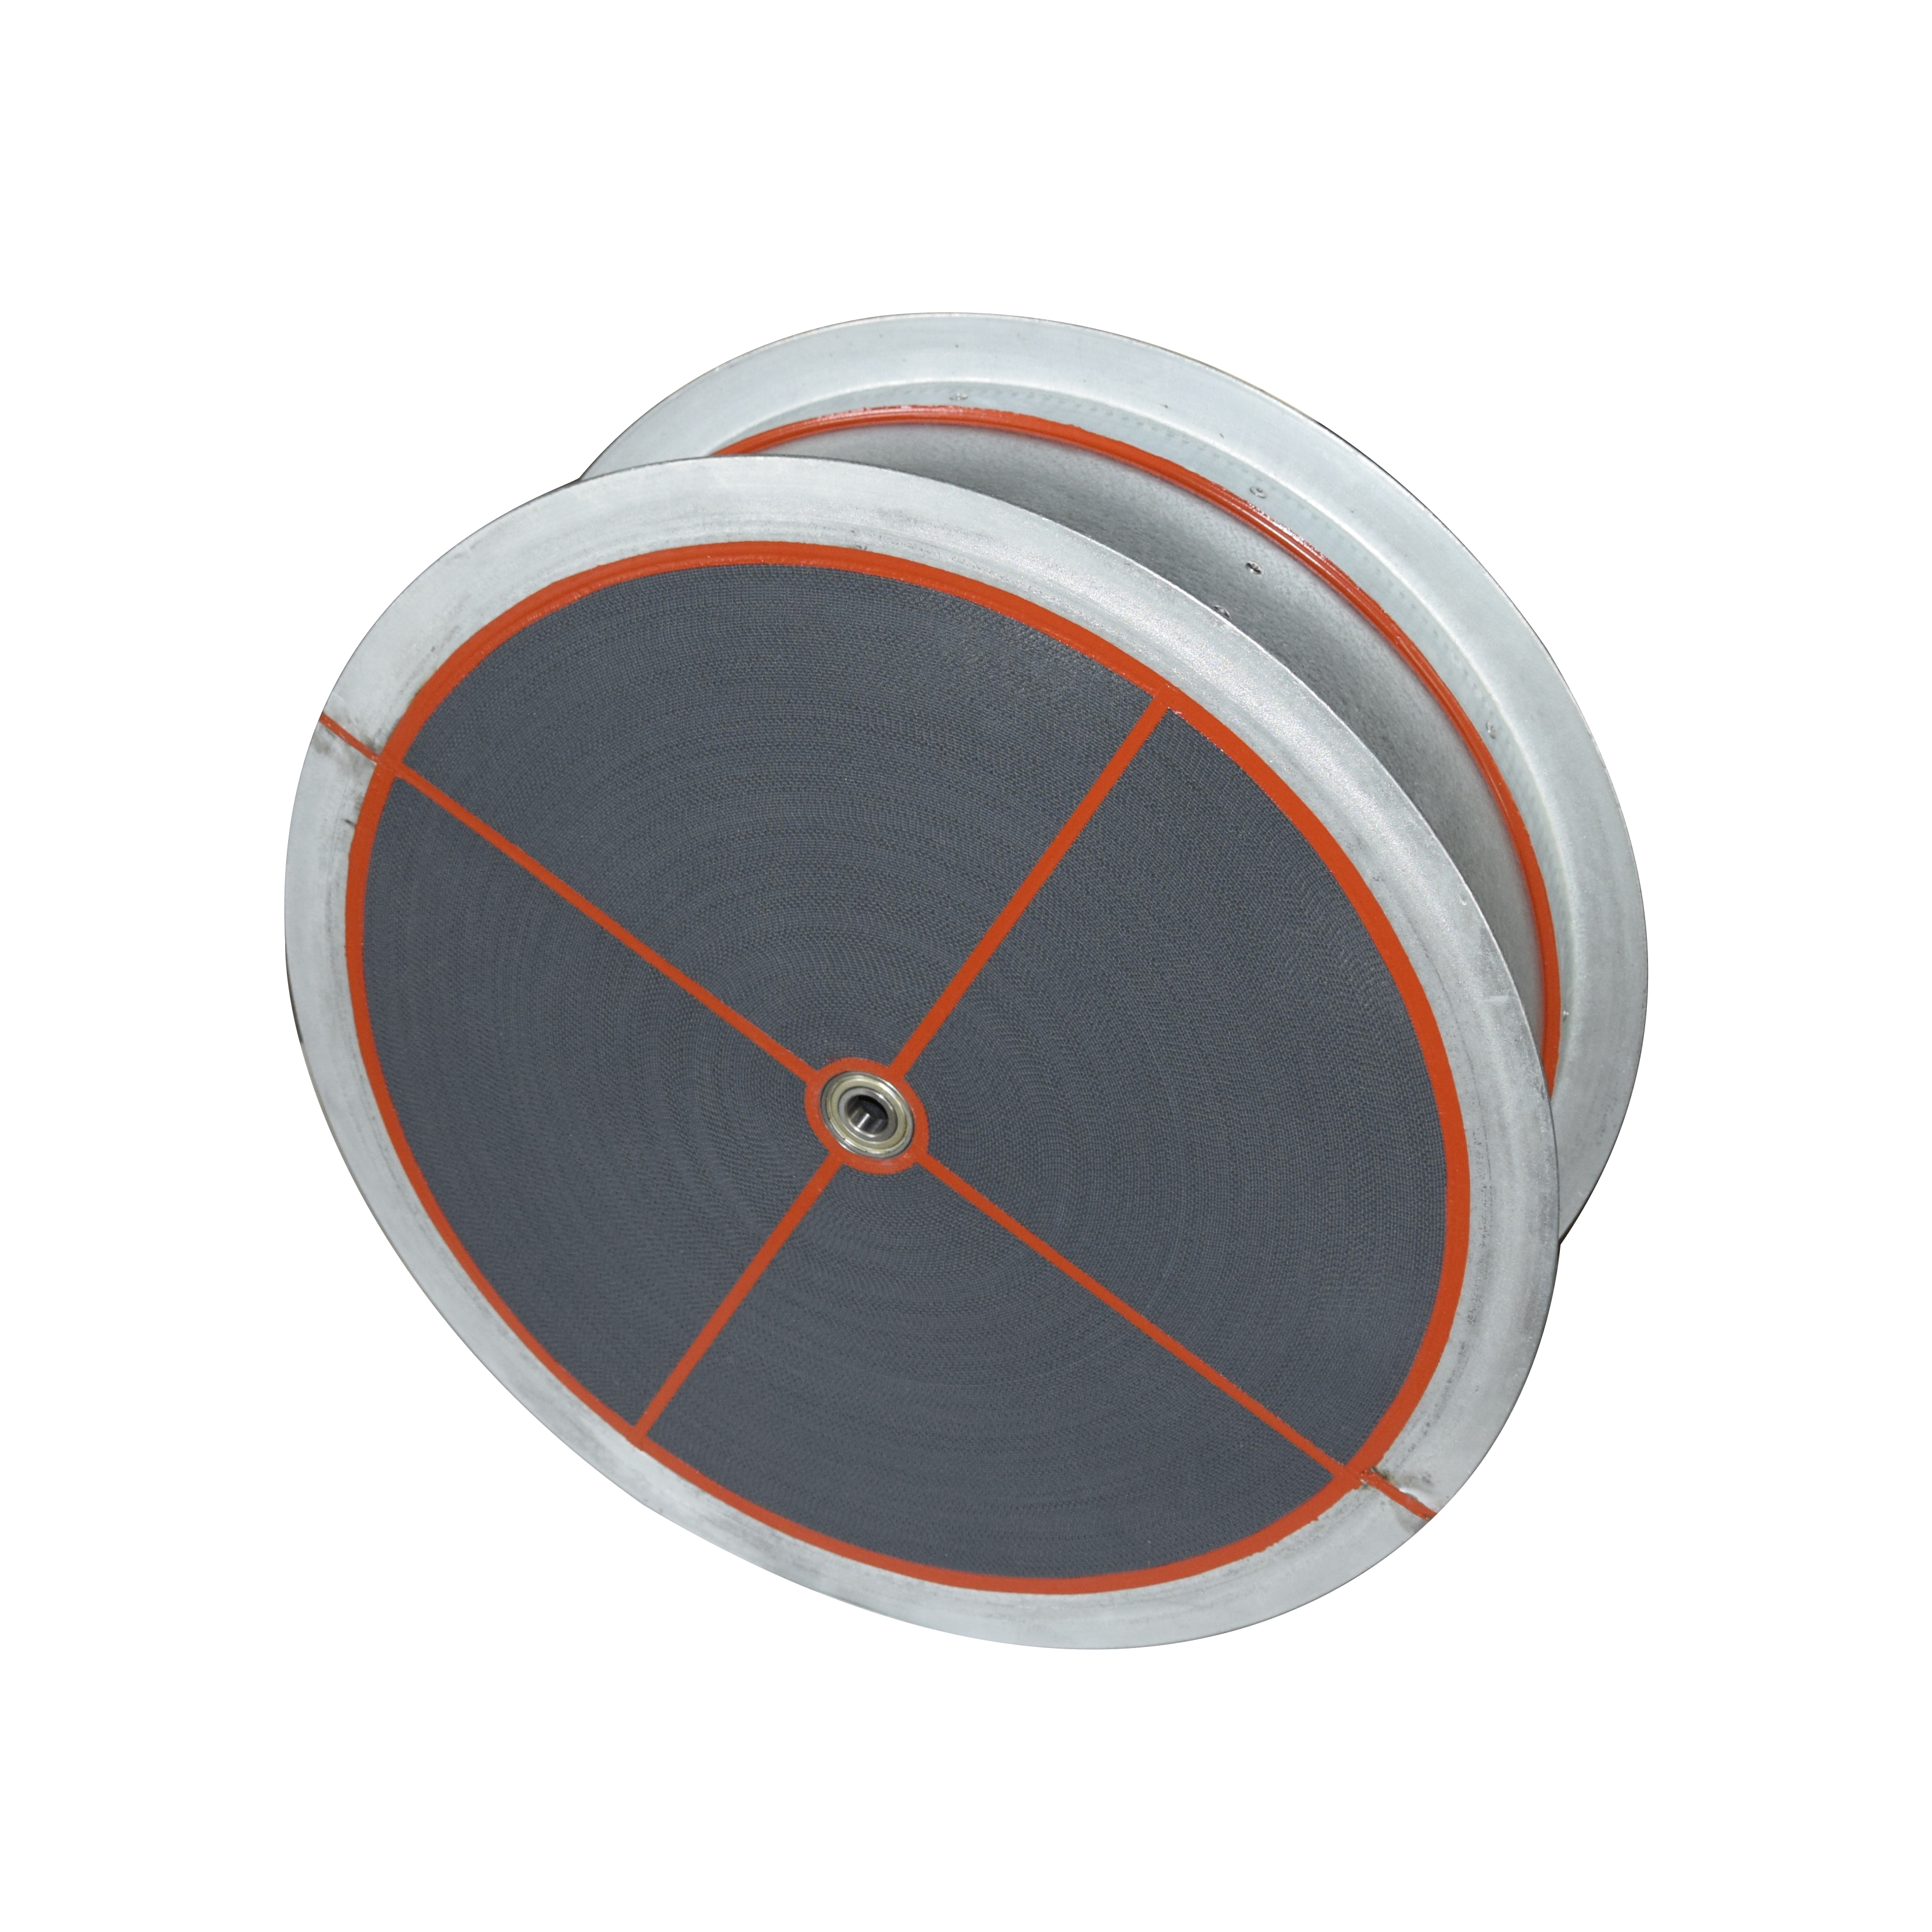 Адсорбционный ротор с кассетой для адсорбционных осушителей воздуха Ahu